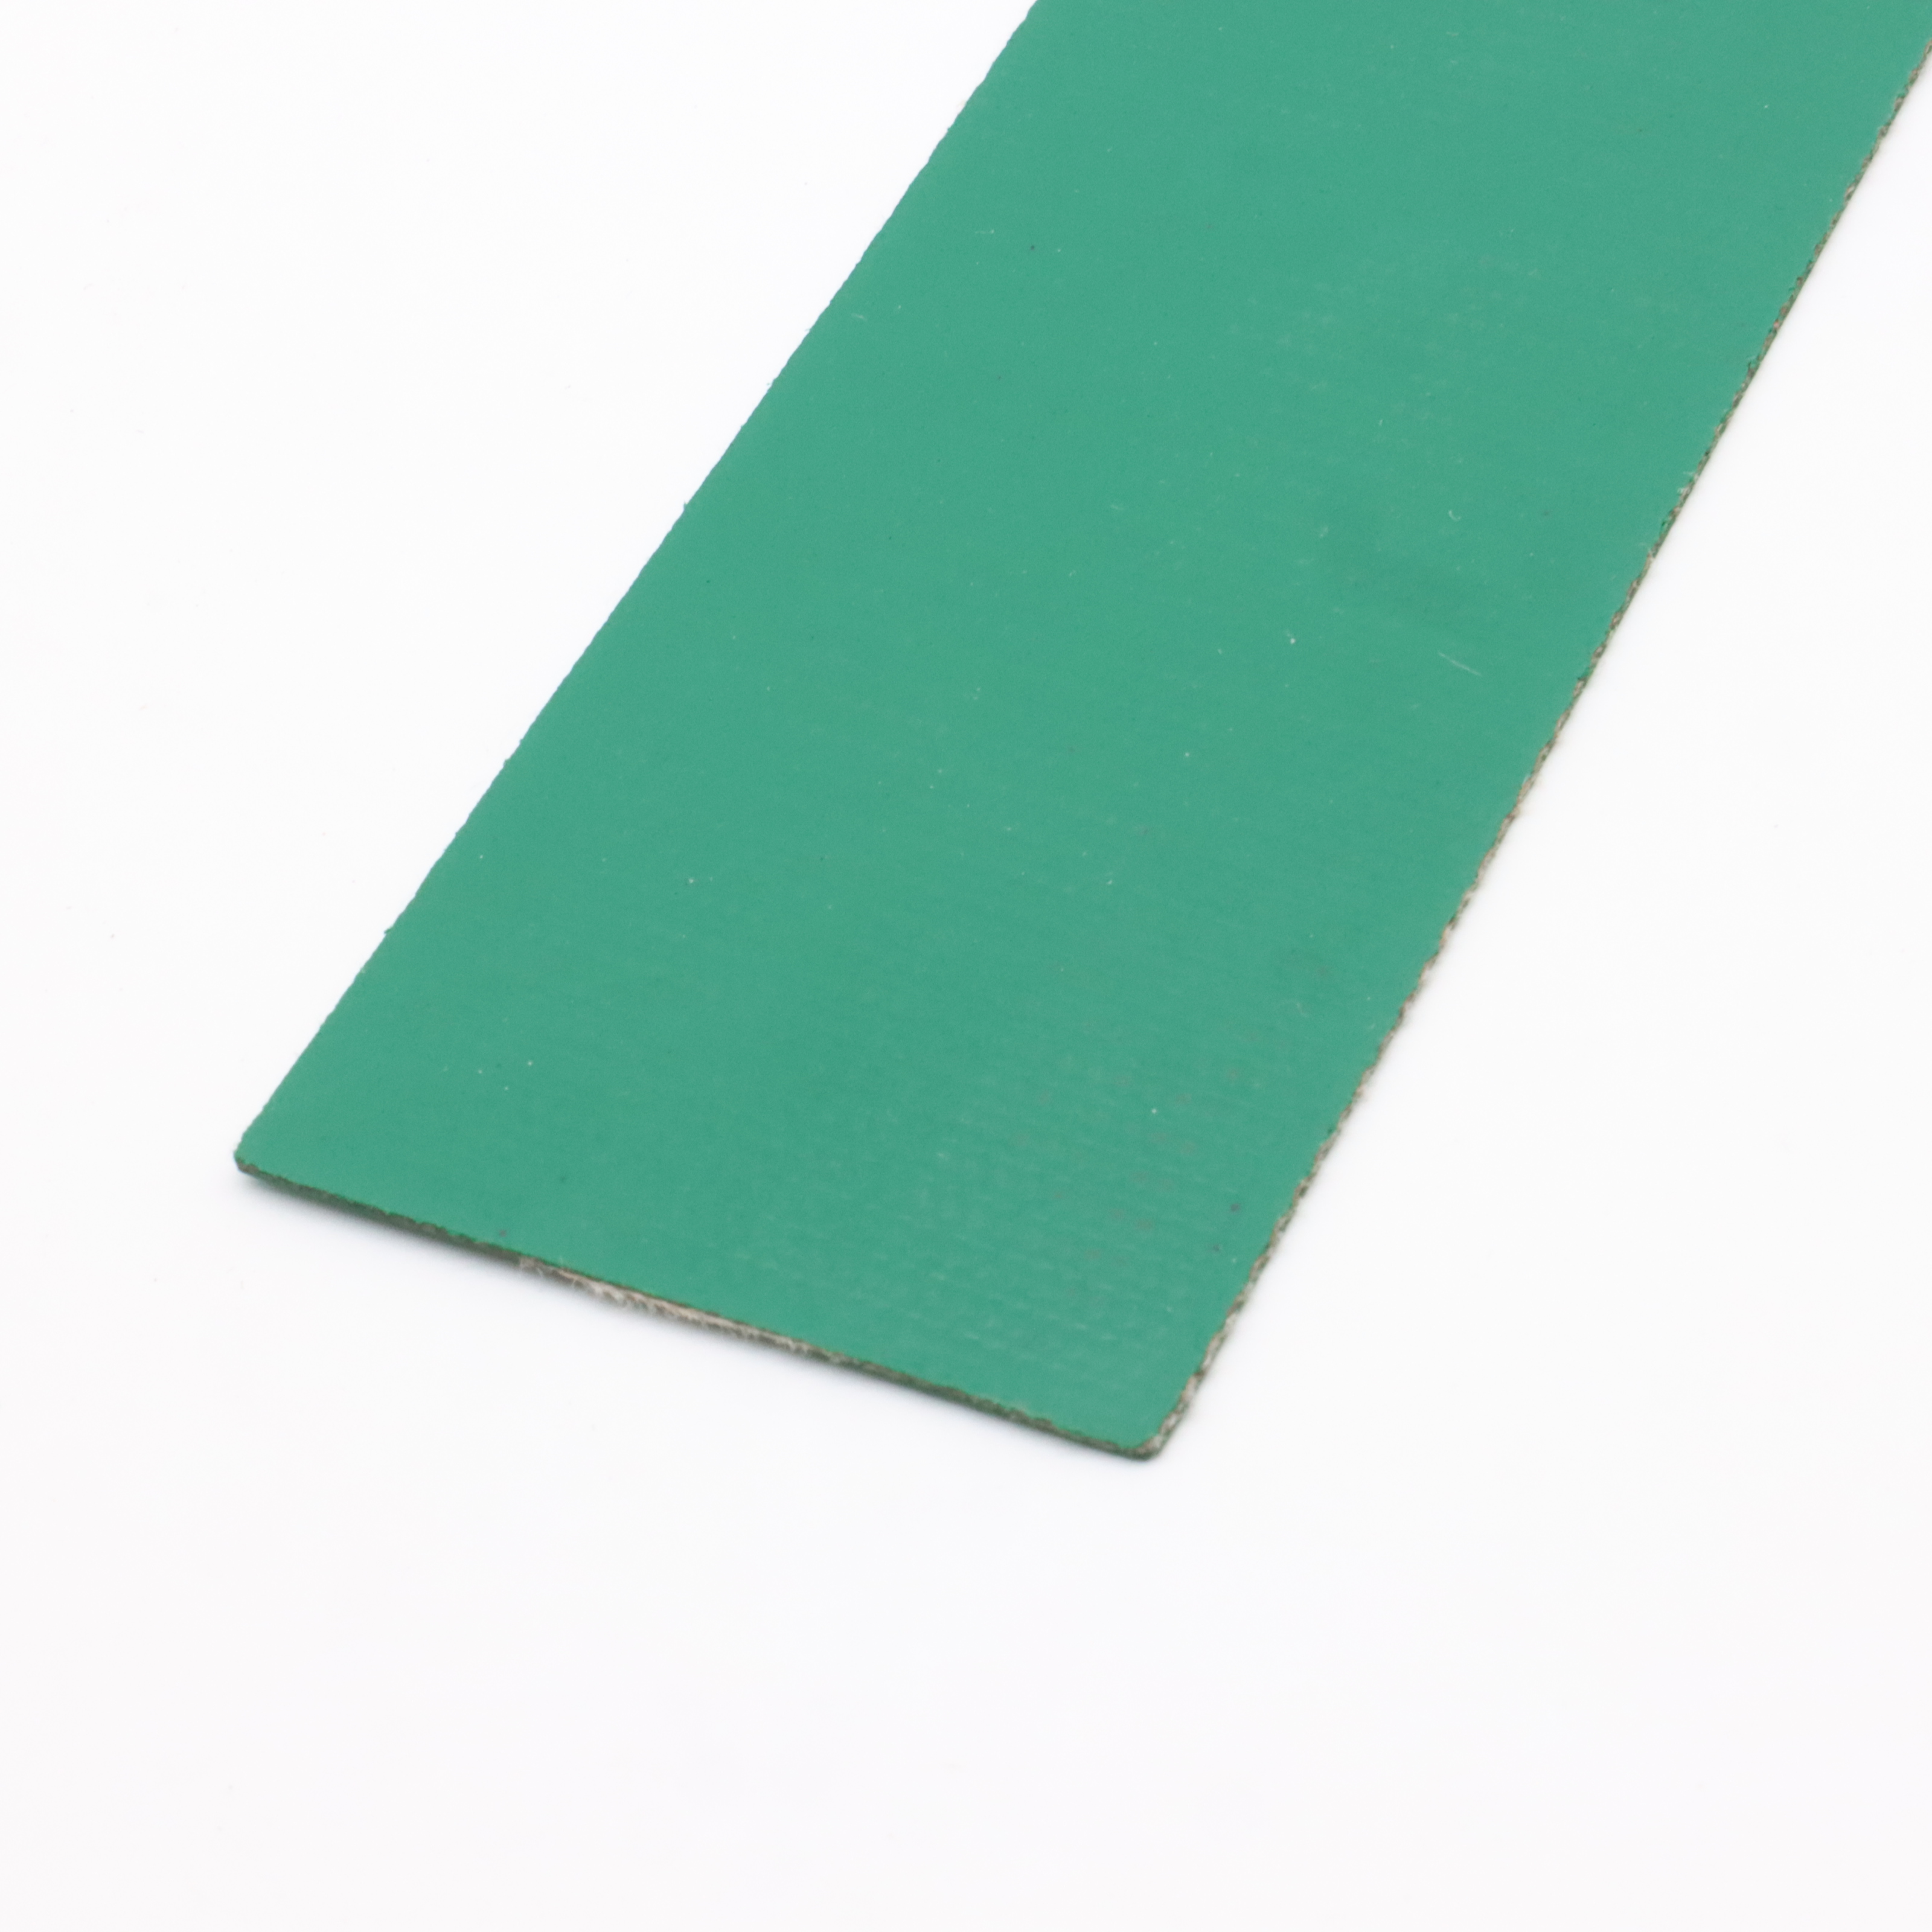 Cinturón texturizado de dos lados verde